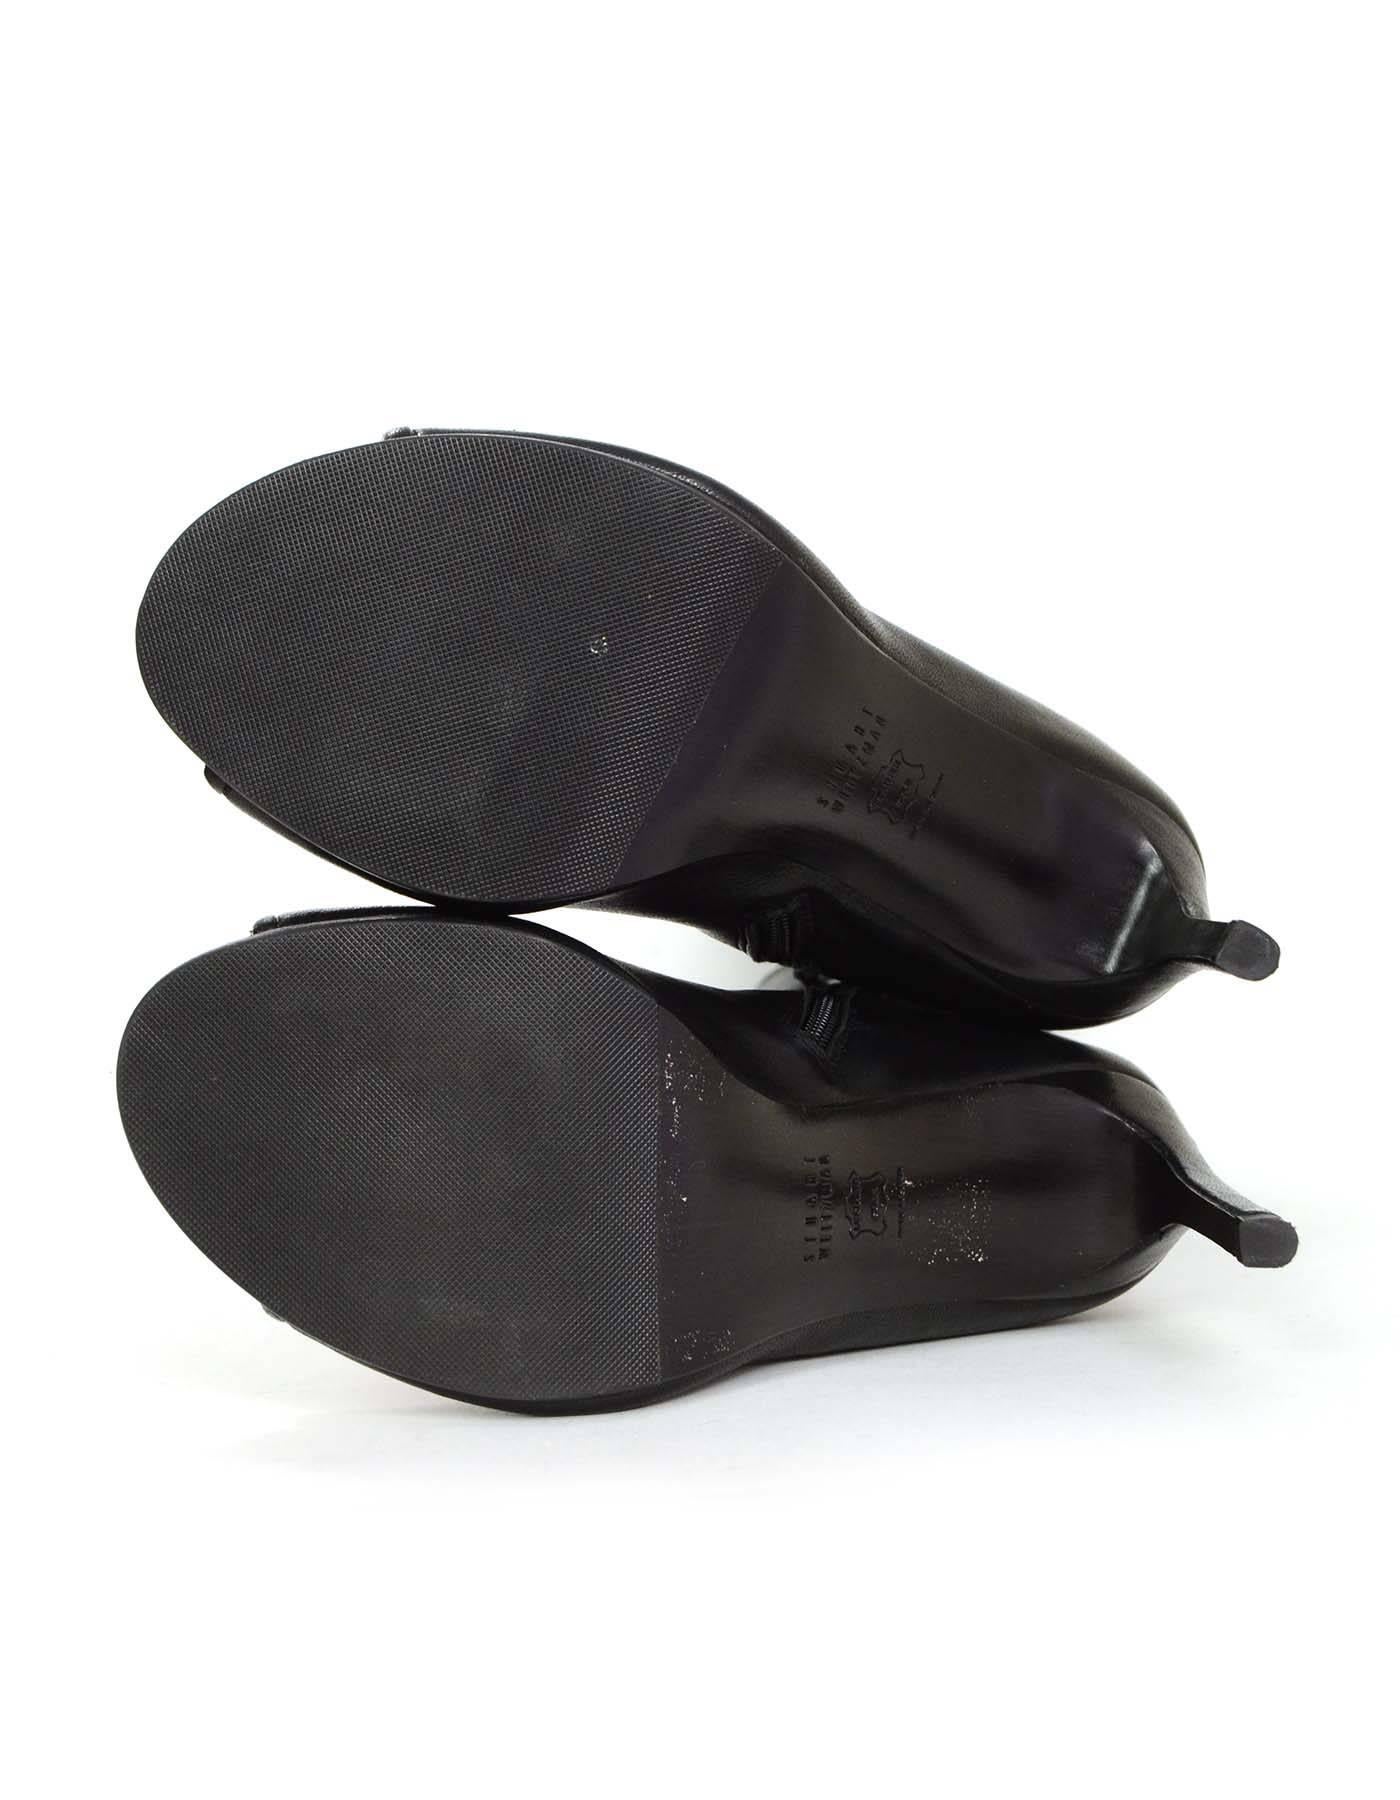 Stuart Weitzman Black Leather Peep-Toe Boots sz 8.5 2